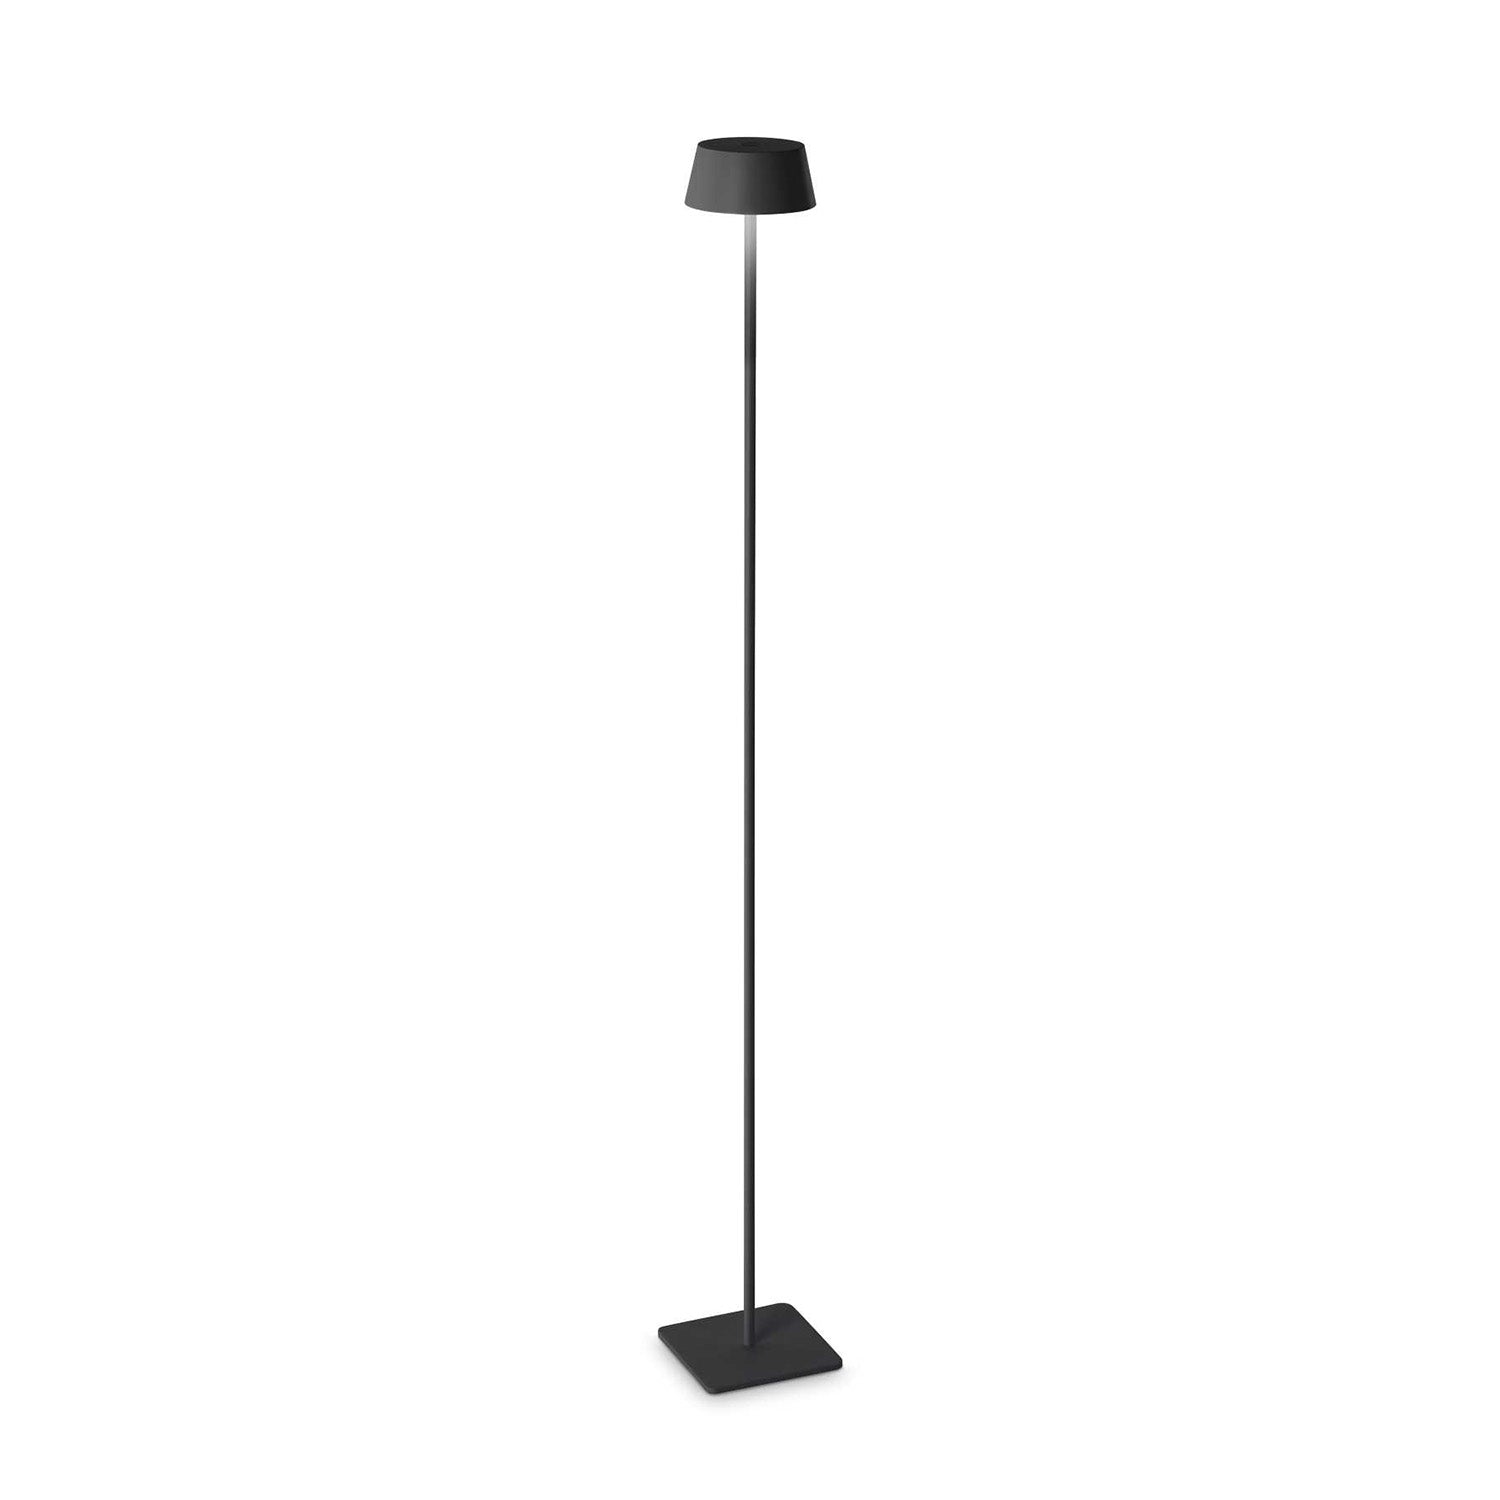 PURE - Minimalist design nomadic outdoor floor lamp